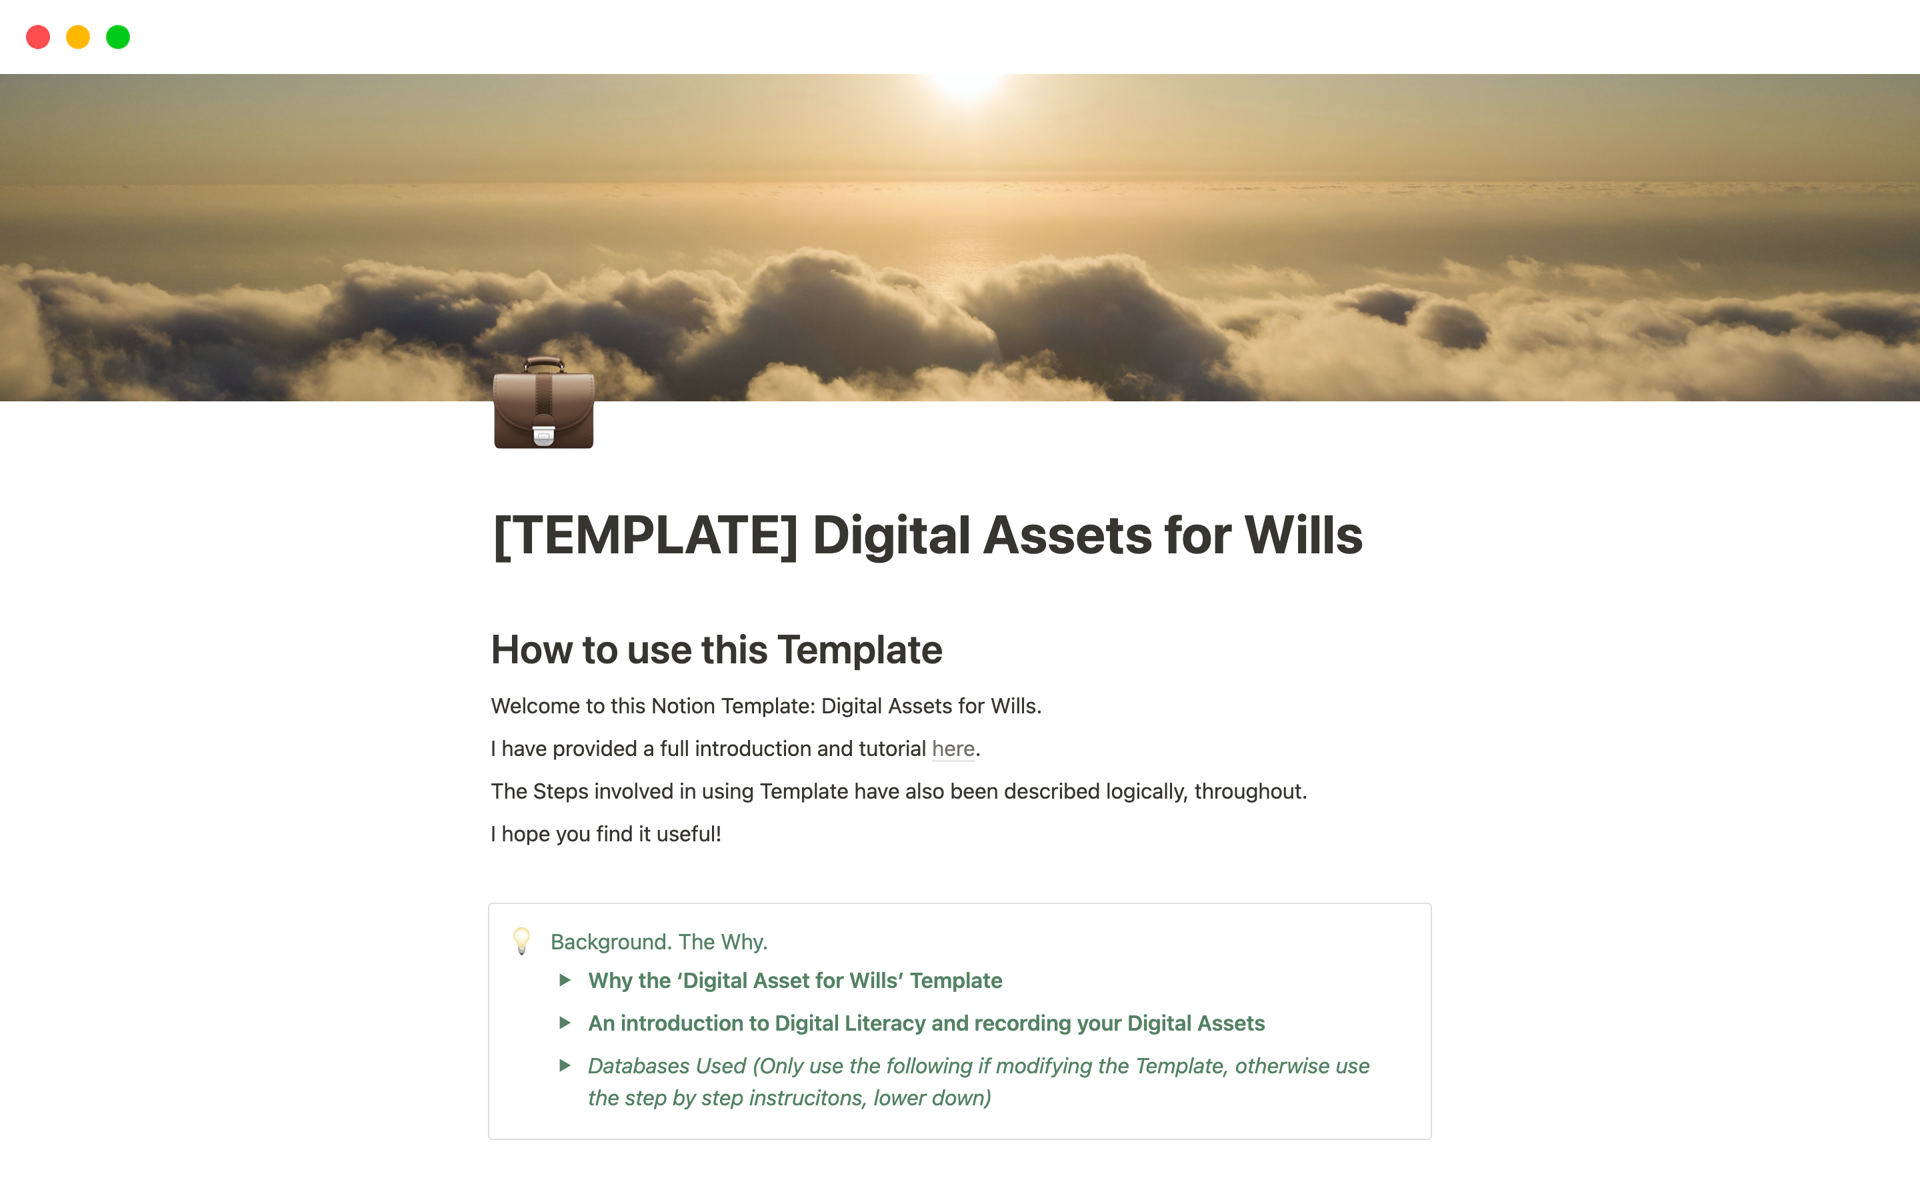 Vista previa de una plantilla para Digital Assets for Wills